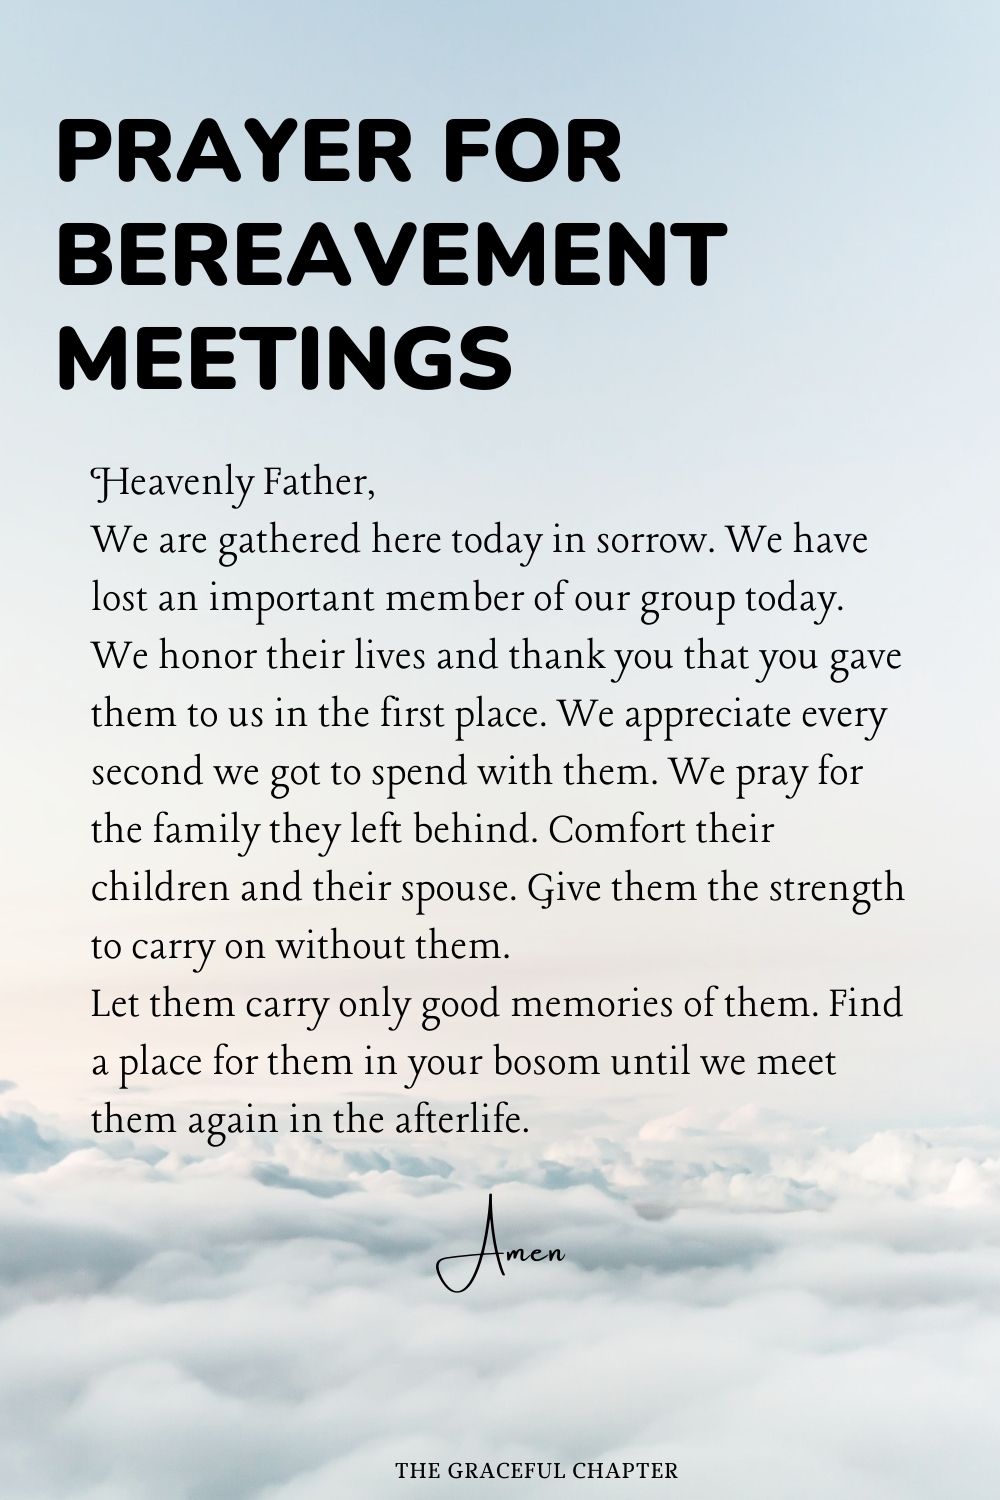 Prayer for Bereavement Meetings